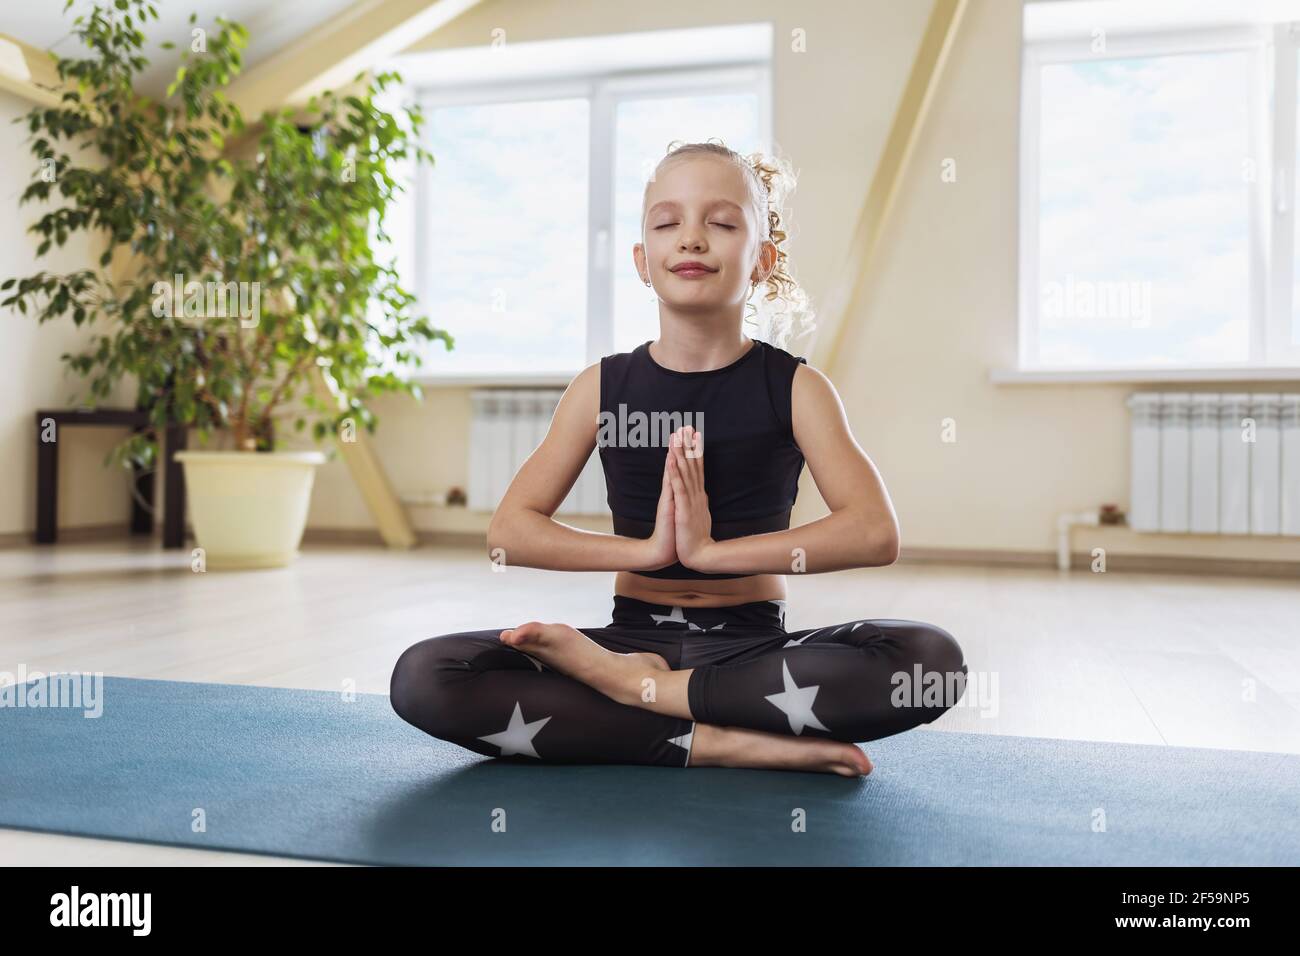 Une petite fille, dans des vêtements de sport noirs, pratiquant le yoga, est engagée dans la méditation, assise dans la position lotus, montrant avec ses mains le salut de n Banque D'Images